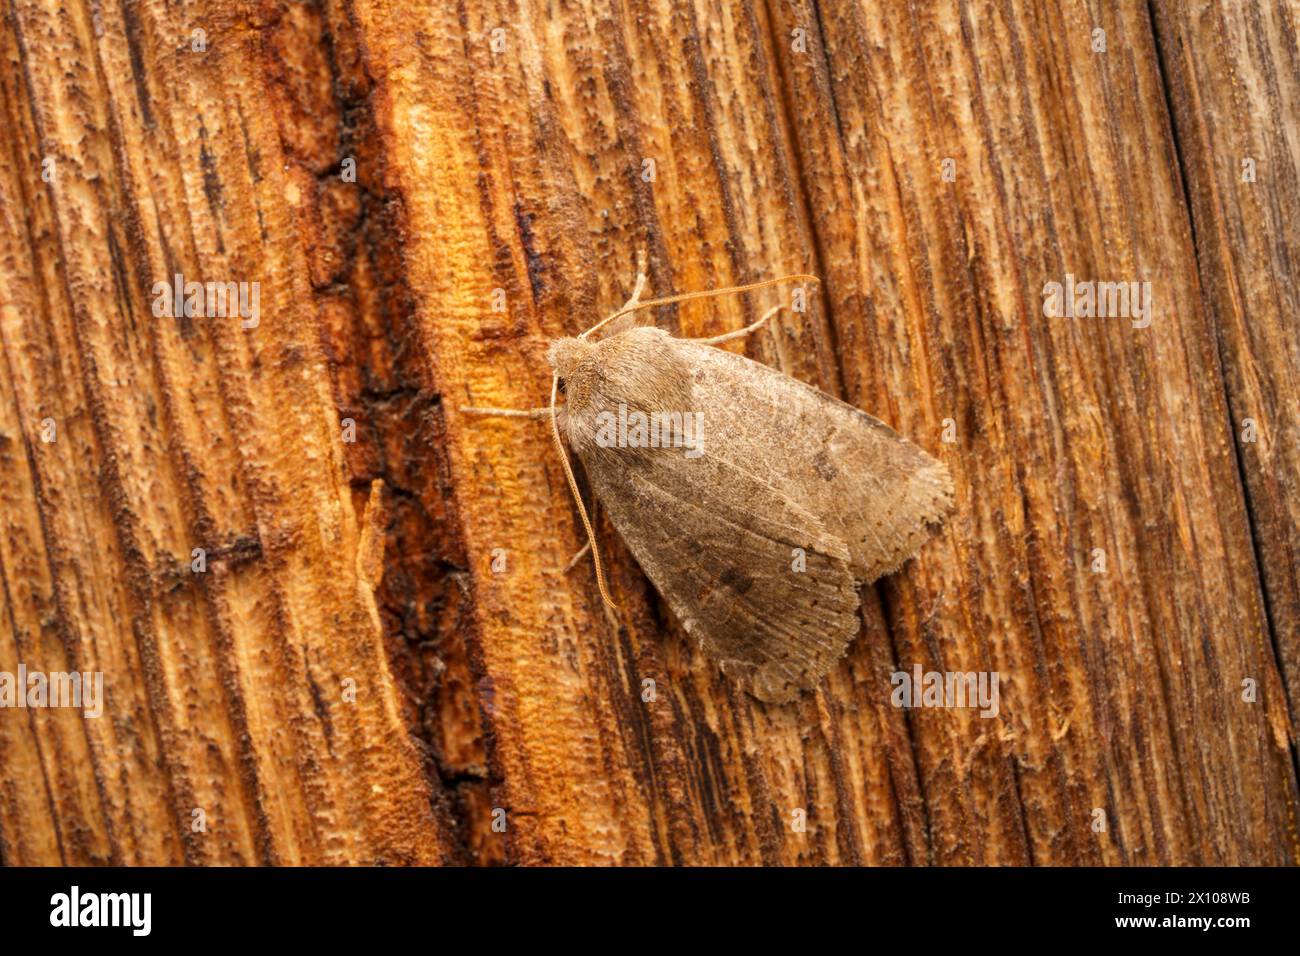 Anorthoa munda Family Noctuidae genus Perigrapha falena quacchera dai due macchie, fotografia di insetti, foto, sfondo Foto Stock